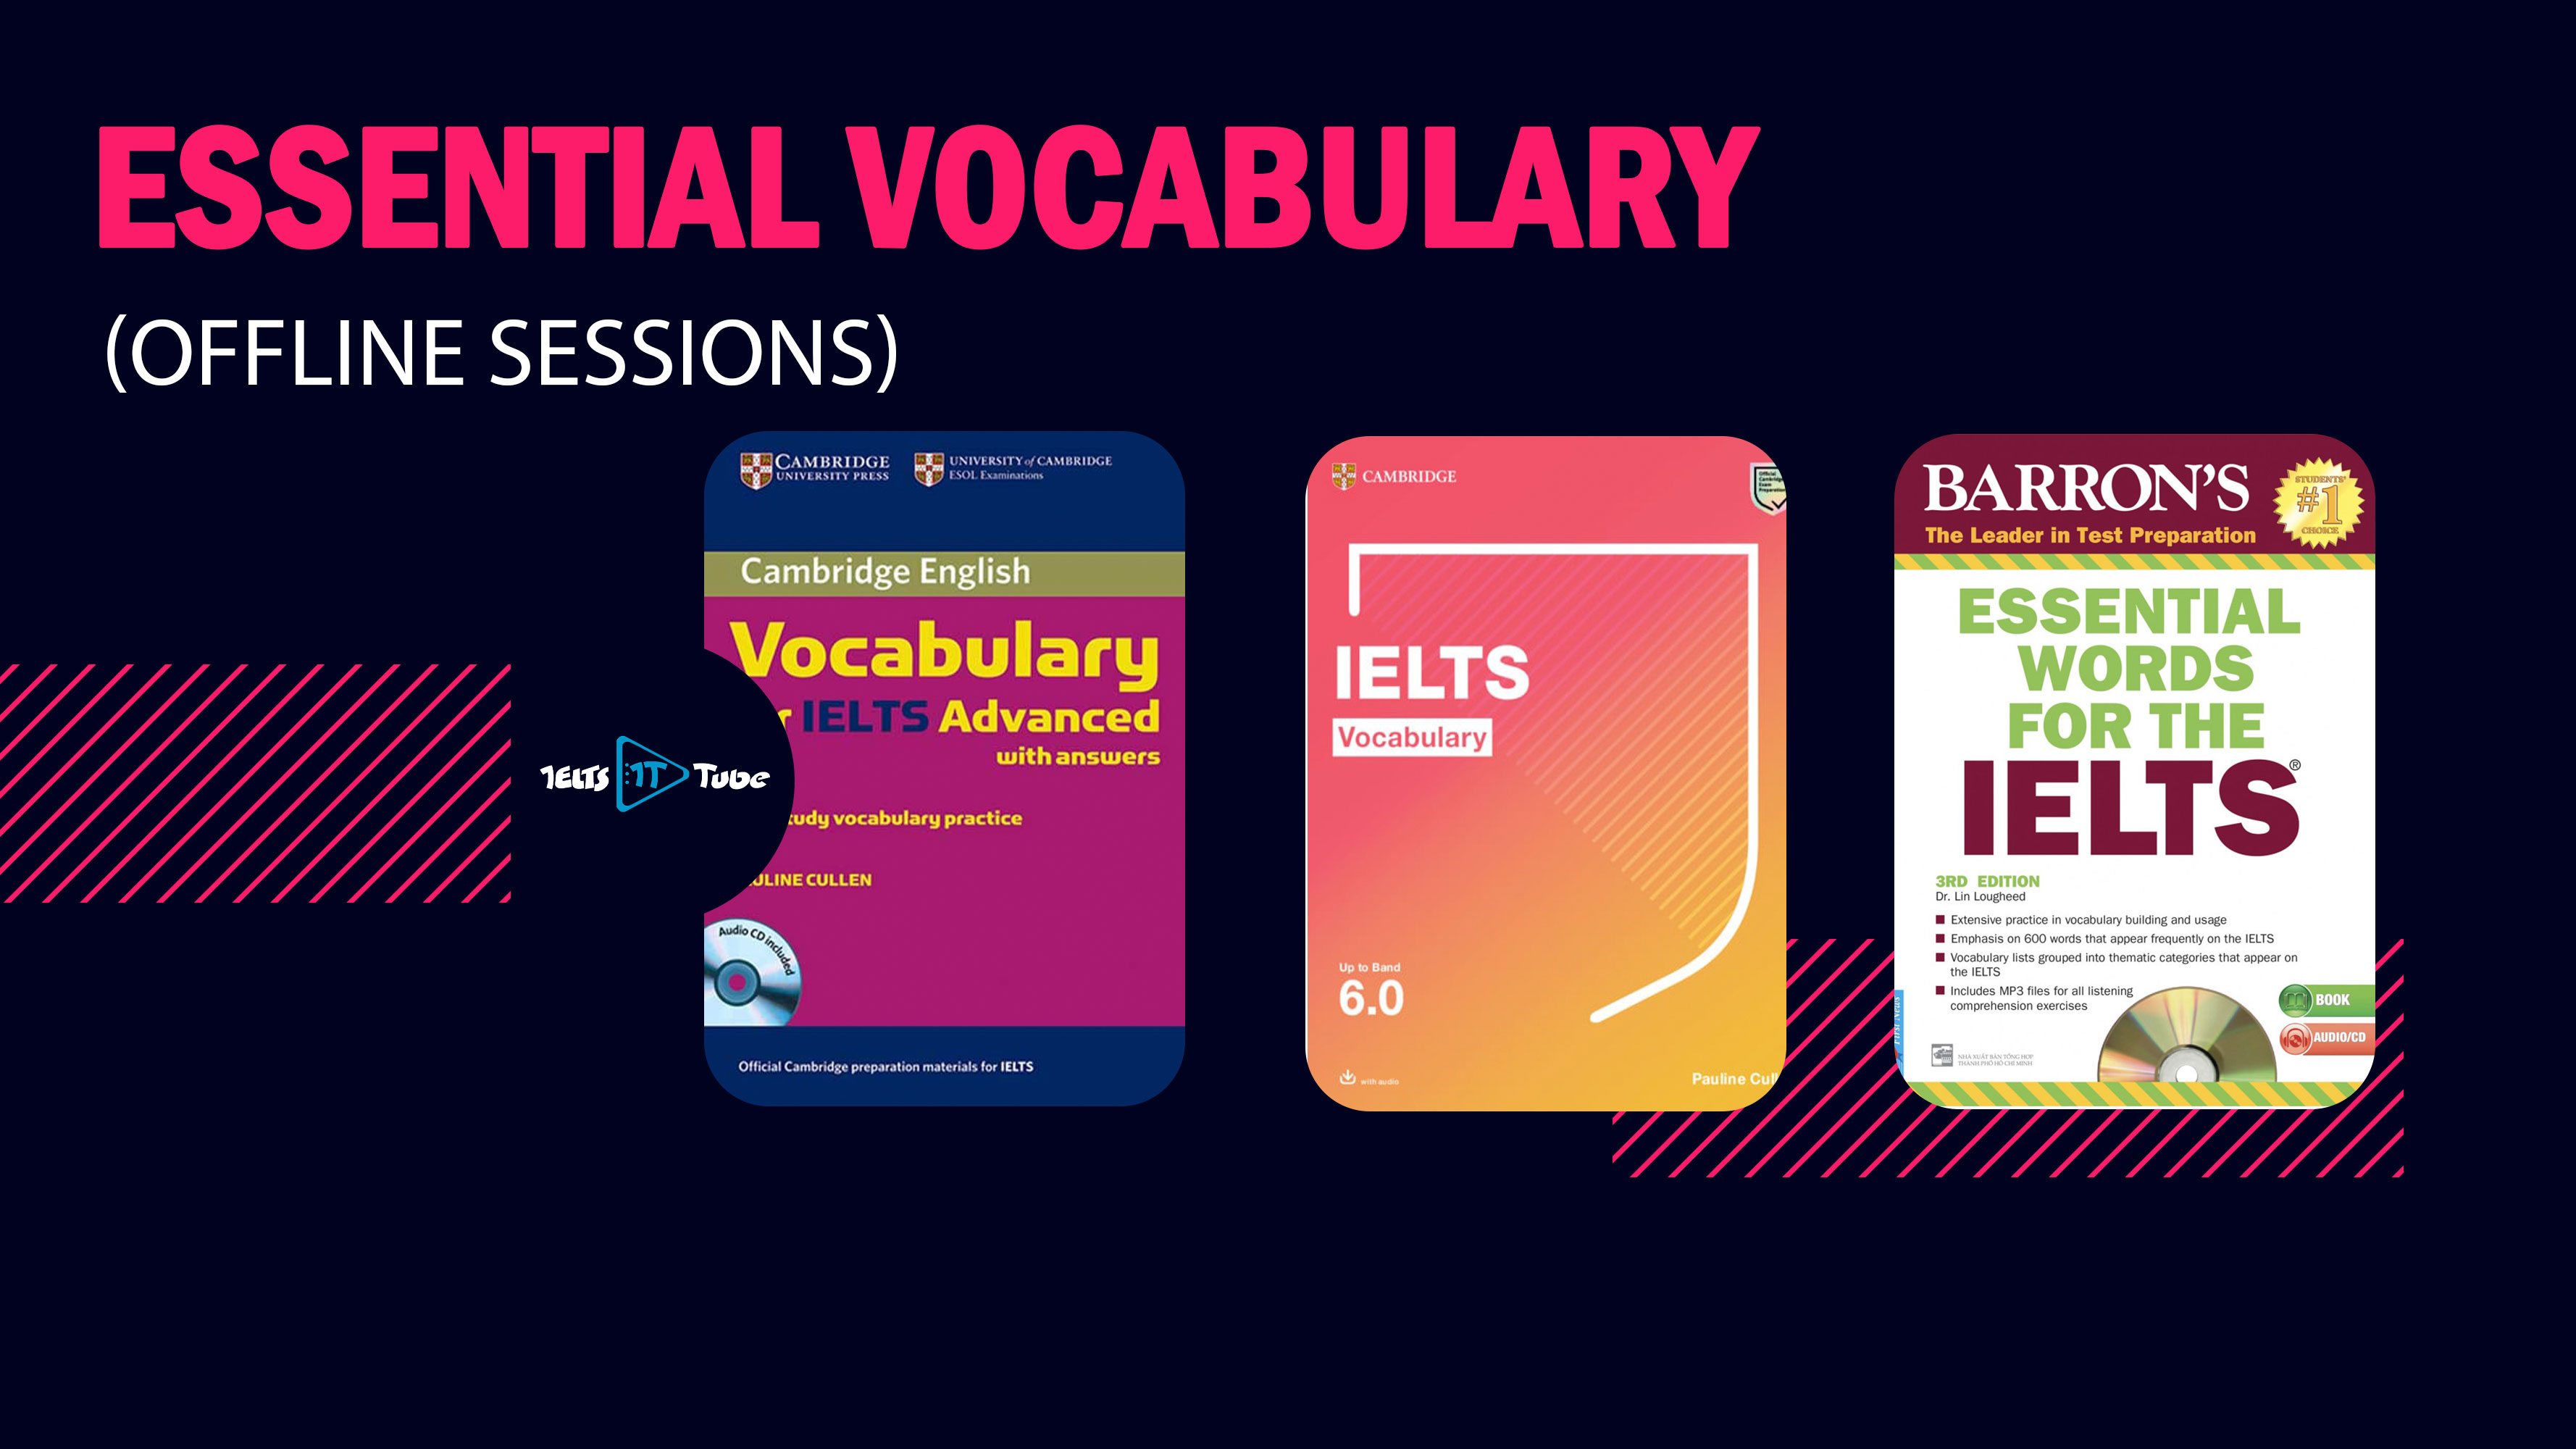 Essential Vocabulary Offline Sessions